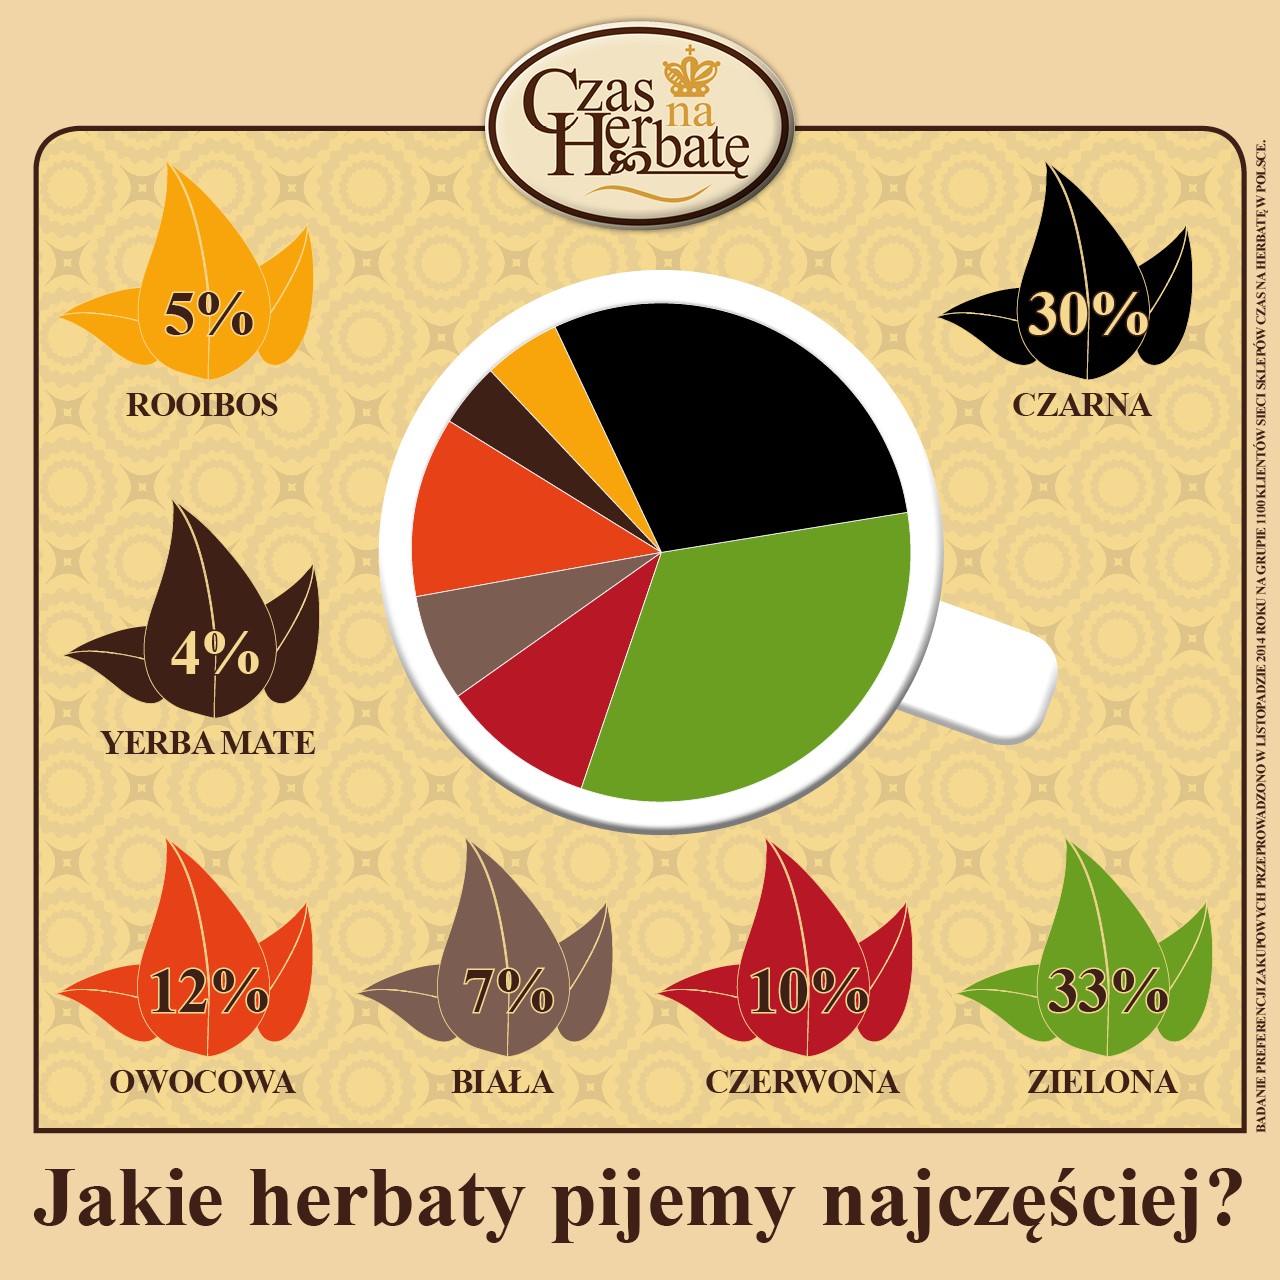 Herbaciane preferencje Polaków